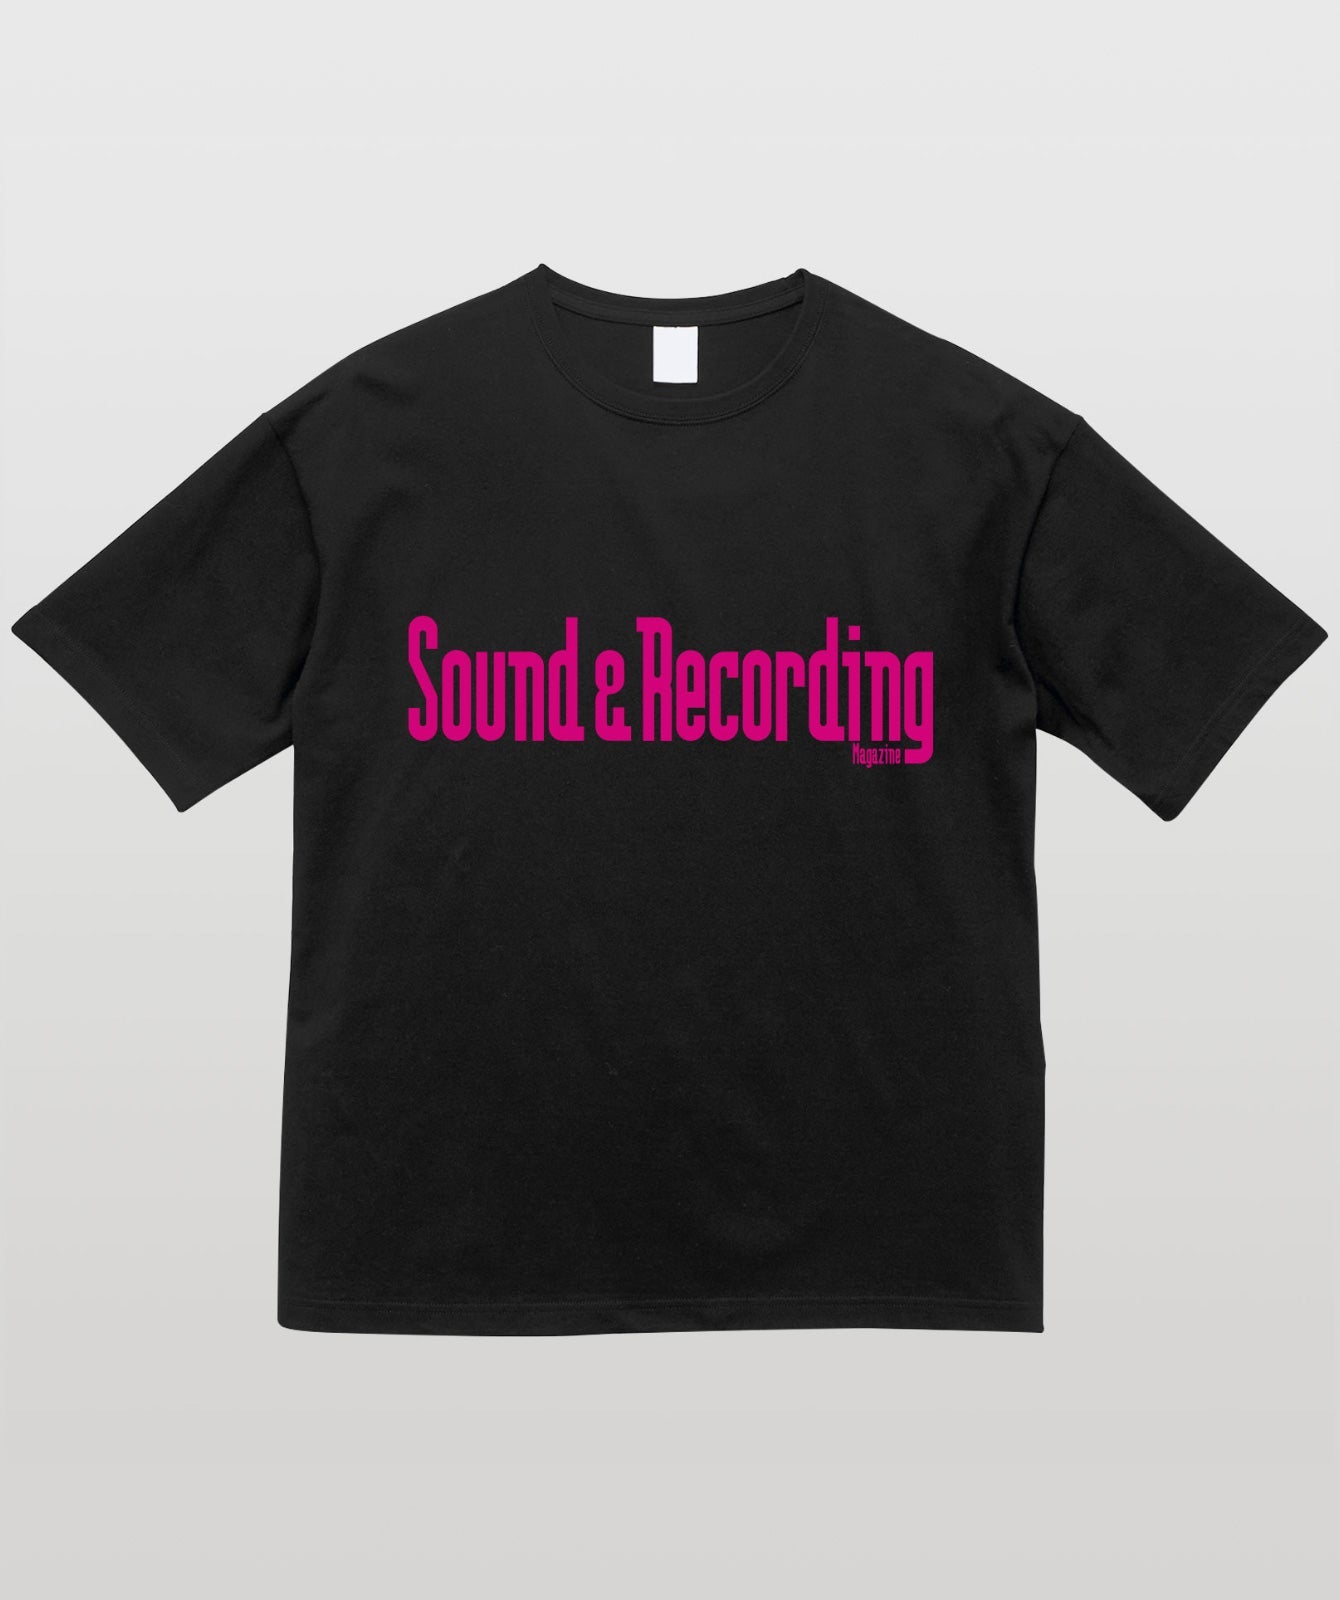 Sound & Recording Magazine オリジナルロゴ(ビッグシルエット)ピンク・ロゴ